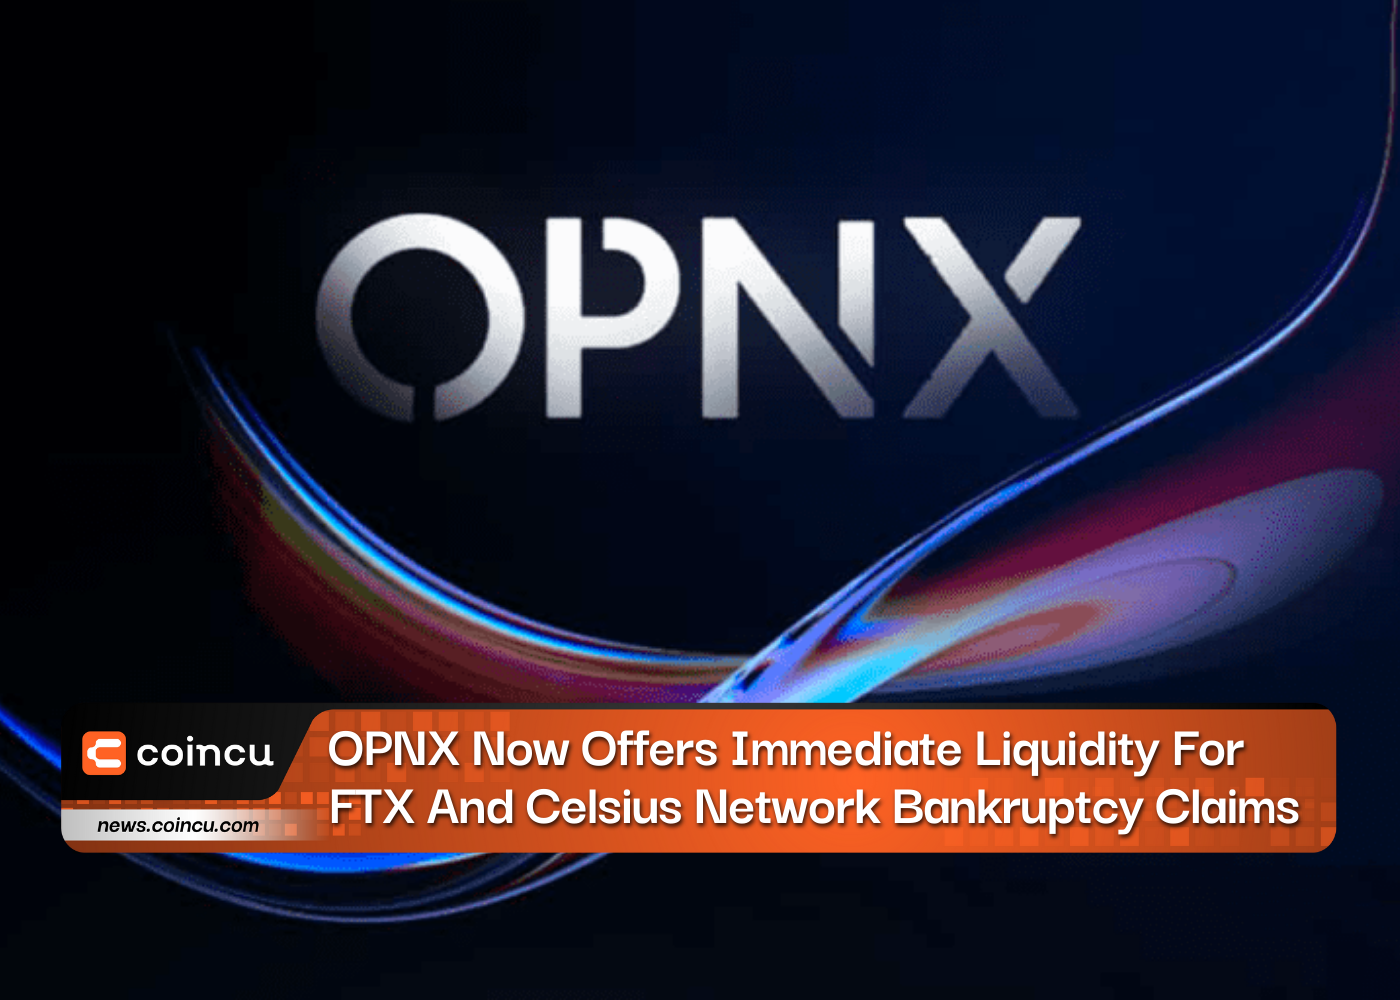 OPNX ahora ofrece liquidez inmediata para reclamos de bancarrota de FTX y Celsius Network